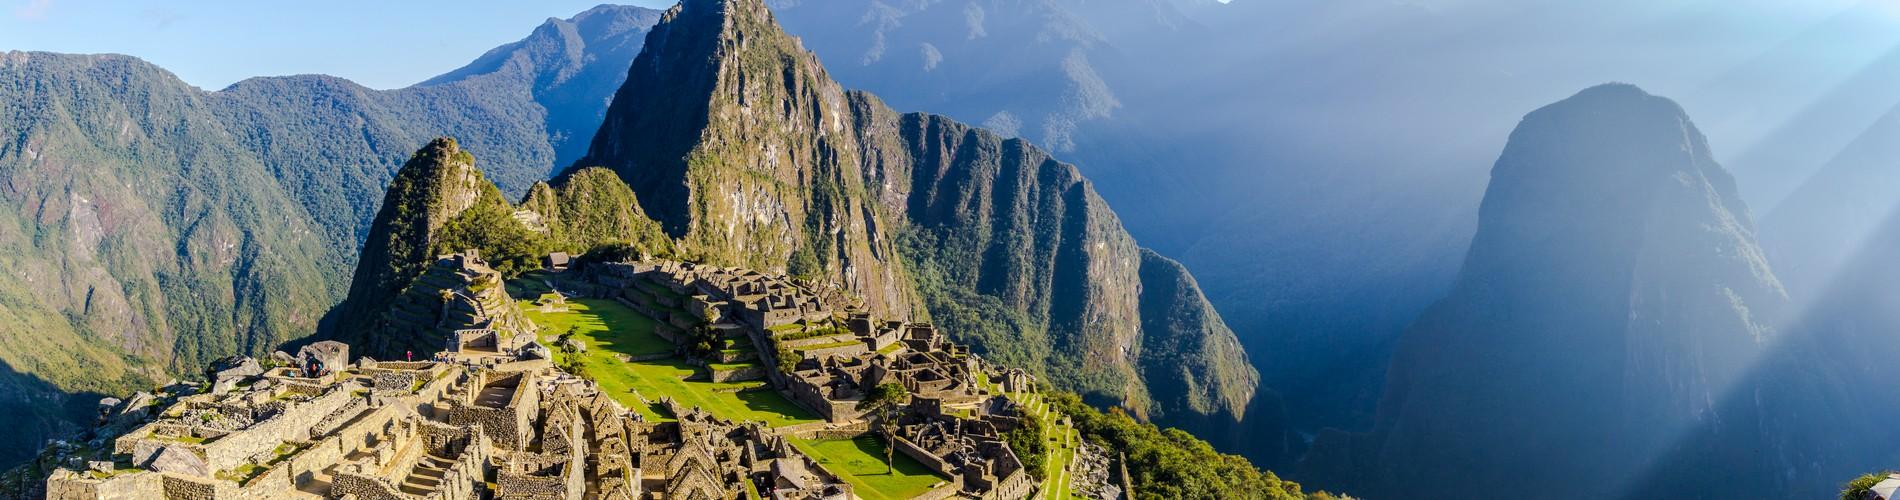 Machu Picchu in One Day